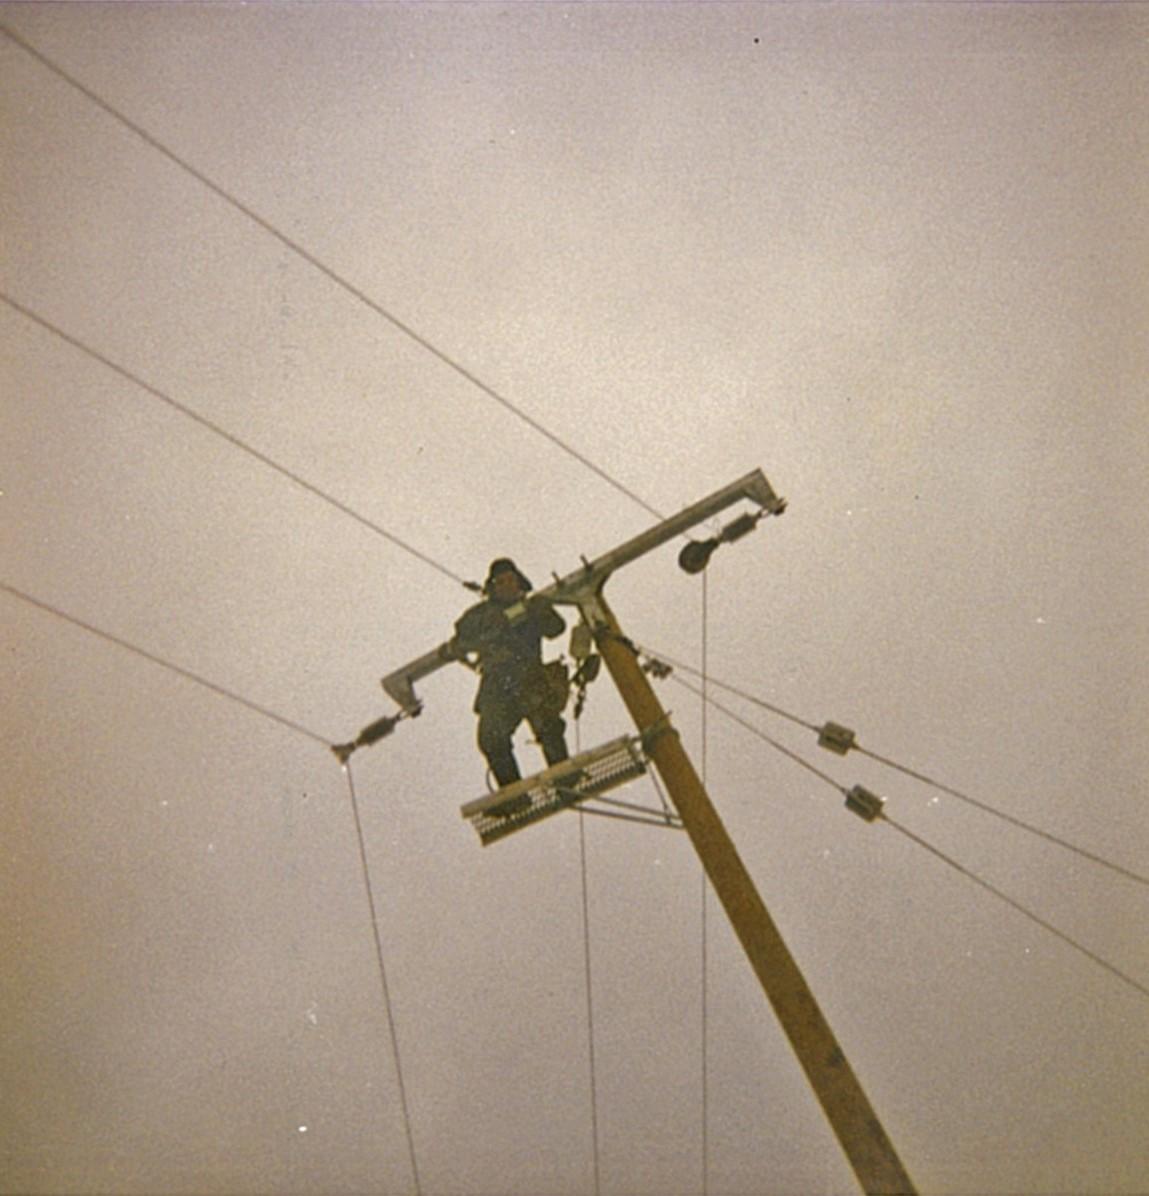 Kuvakaappaus vanhasta valokuvasta 1970-1980-luvulta. Kuvassa näkyy sähköasentaja, joka työskentelee ylhäällä pylväässä. Kuva on otettu alaviistosta. 